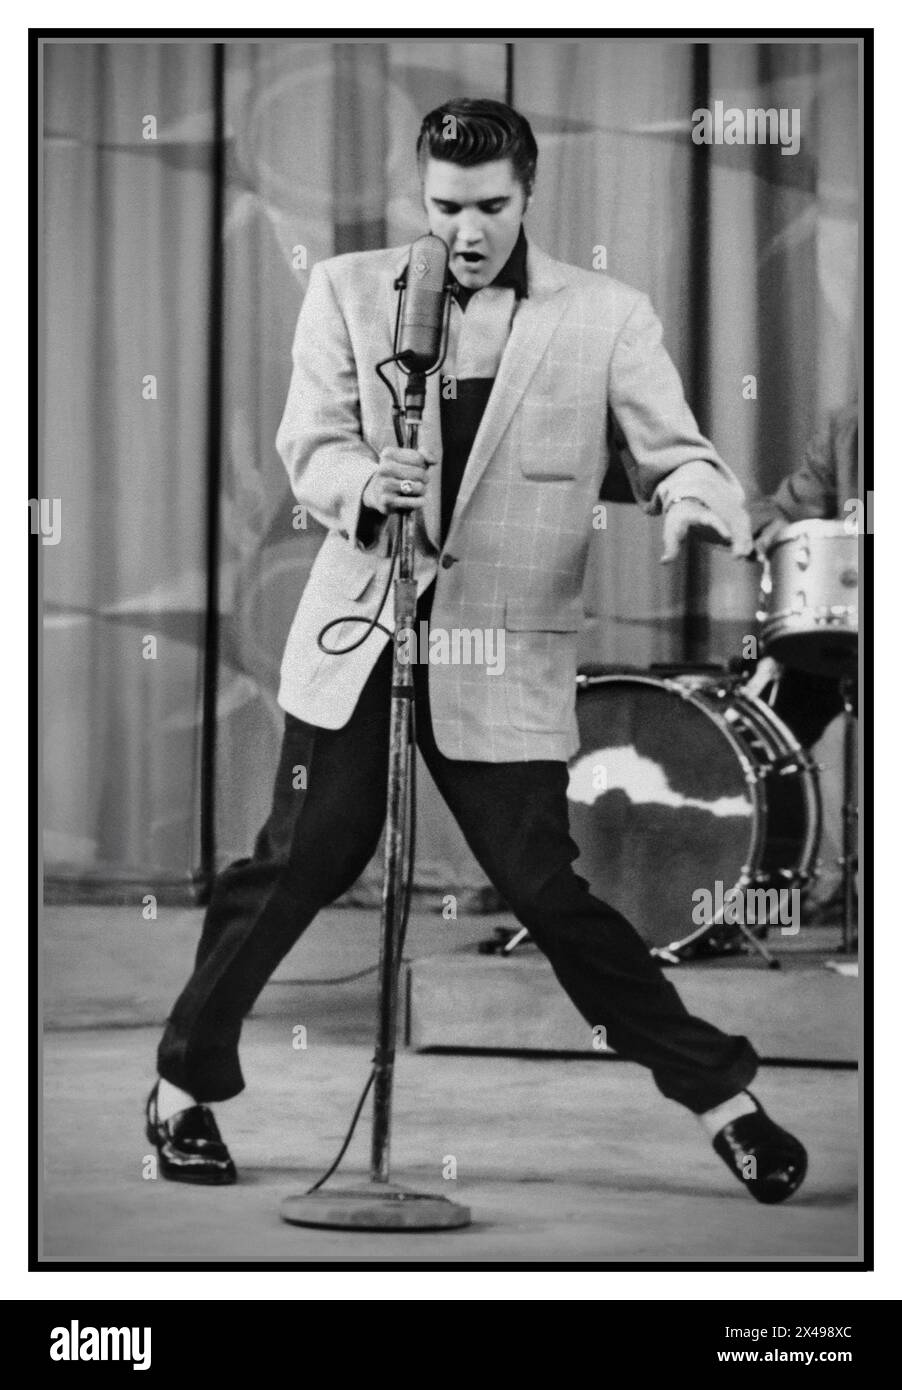 Elvis Presley ikonischer amerikanischer Sänger mit „Hound Dog“ auf der Milton Berle Show 1956 California USA Elvis' Aufführung von „Hound Dog“ auf der Ausgabe von „The Milton Berle Show“ vom 5. Juni 1956 sticht als einer der greatistischen Momente seiner gesamten Karriere hervor, Elvis Presley in seiner Blüte. Elvis Presley Elvis spielt Hound Dog in der Milton Berle Show am 5. Juni 1956 Stockfoto